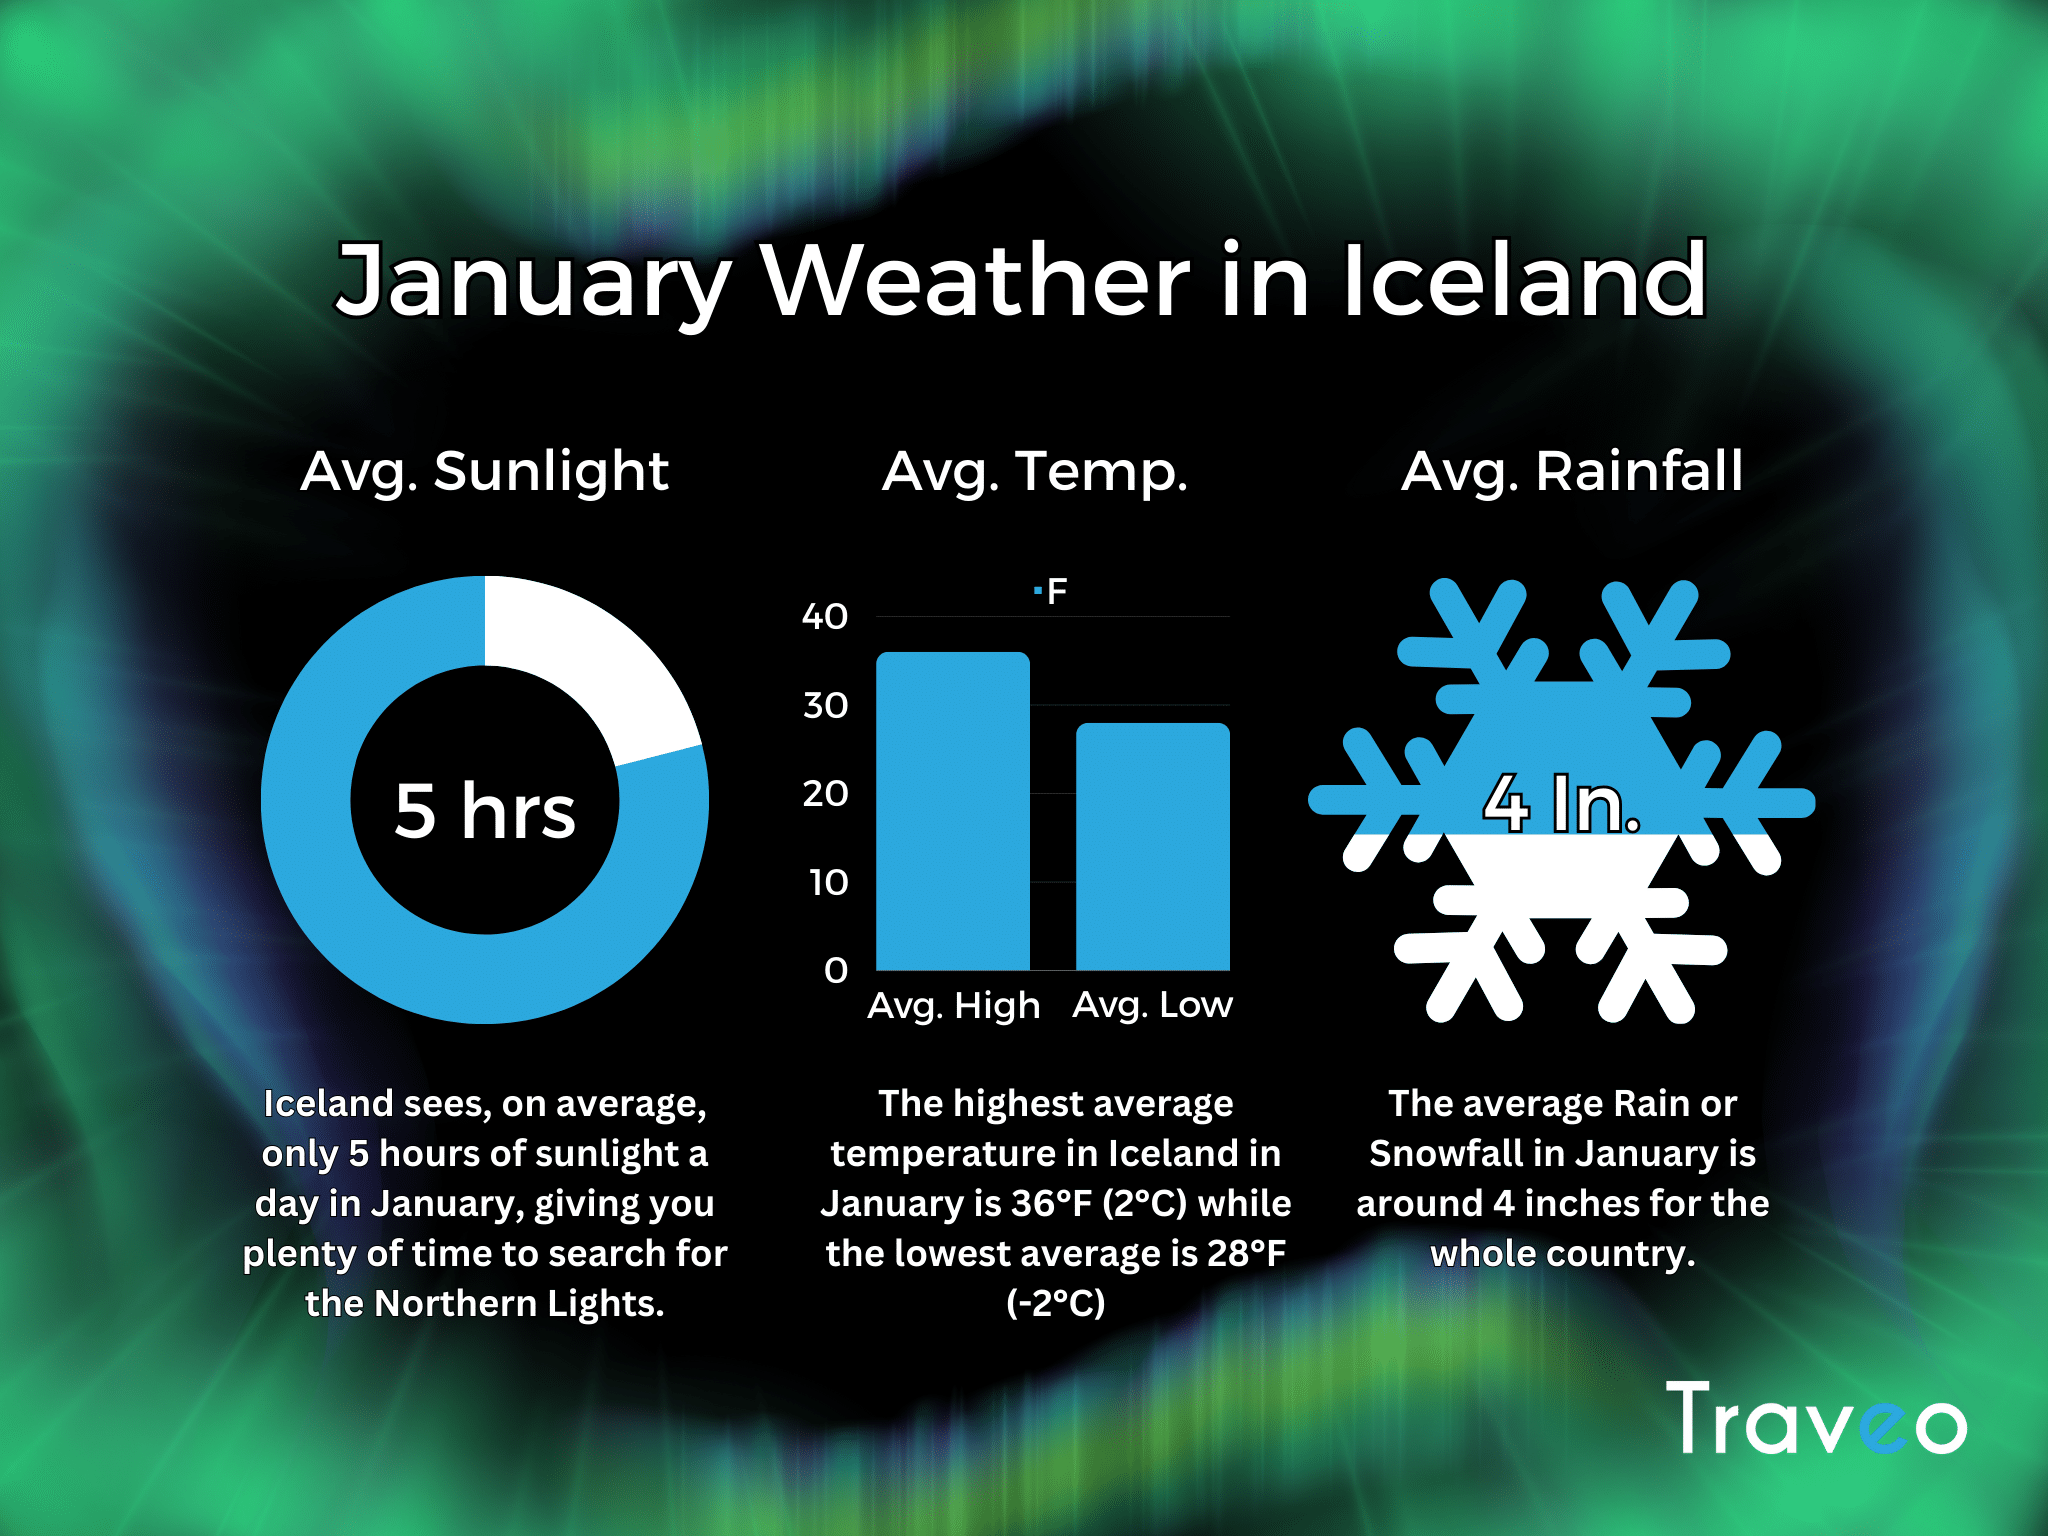 Une infographie montrant la météo moyenne et les heures de clarté en Islande en janvier.